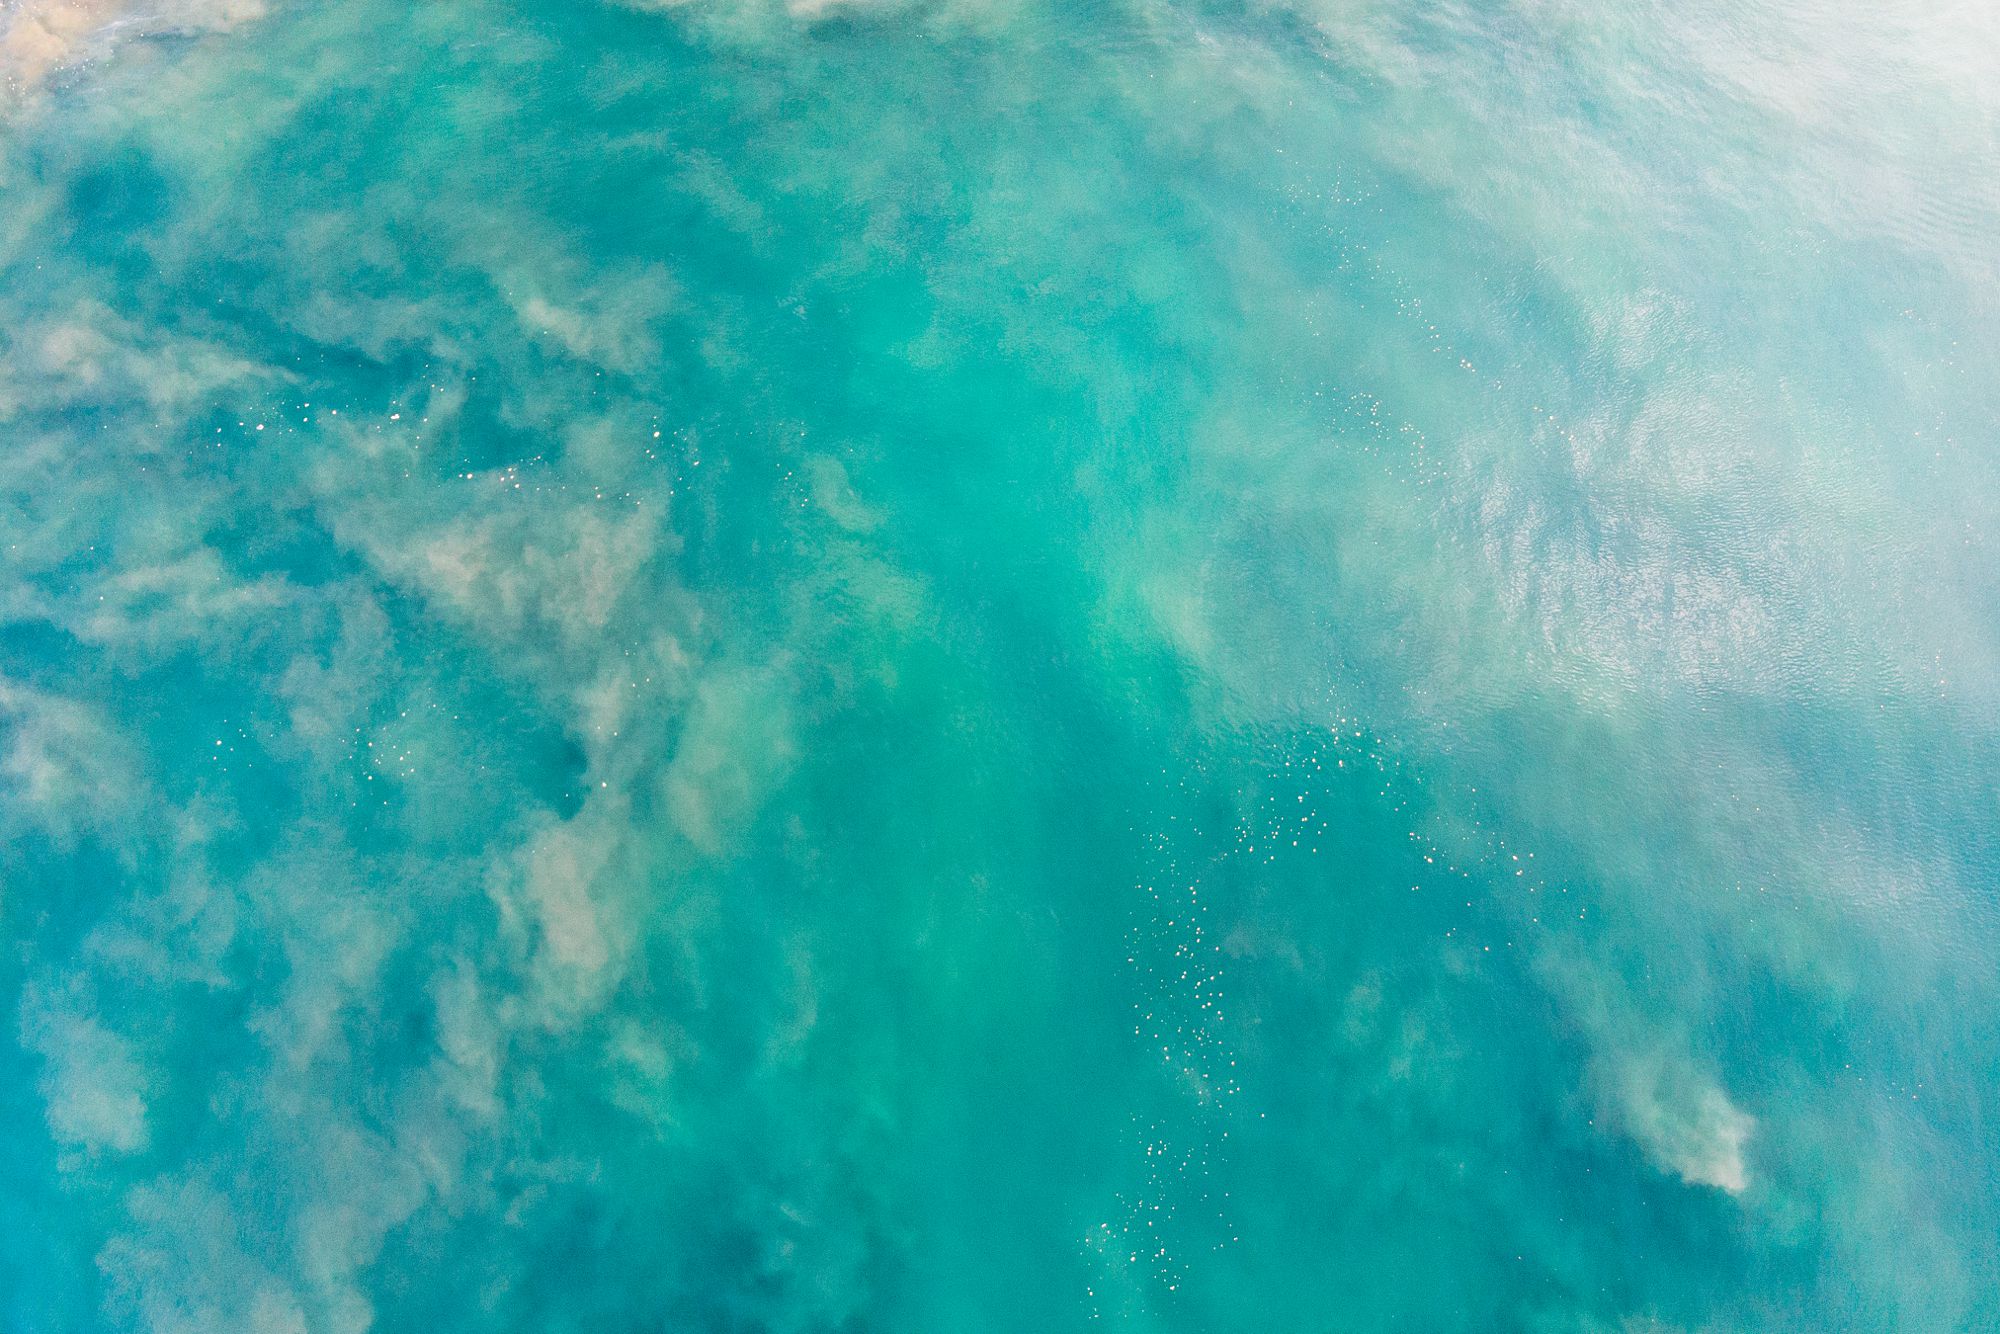 Pacific-ocean-from-above-Drone-footage-Troncones-Guerrero-Mexico